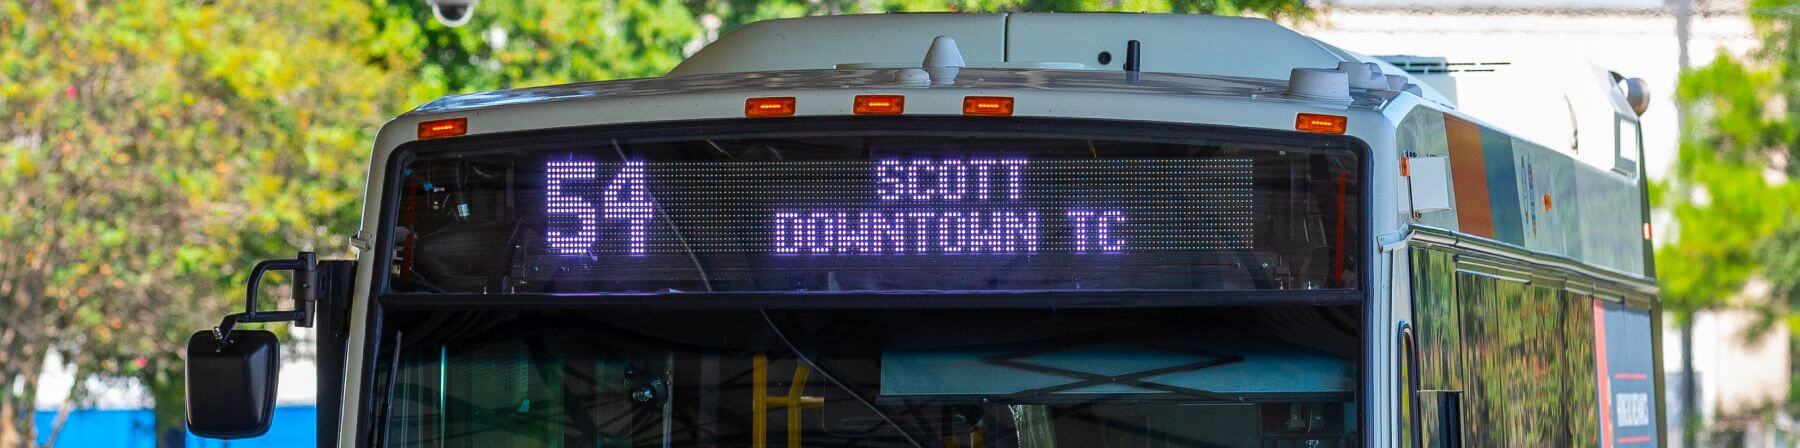 54 Scott bus